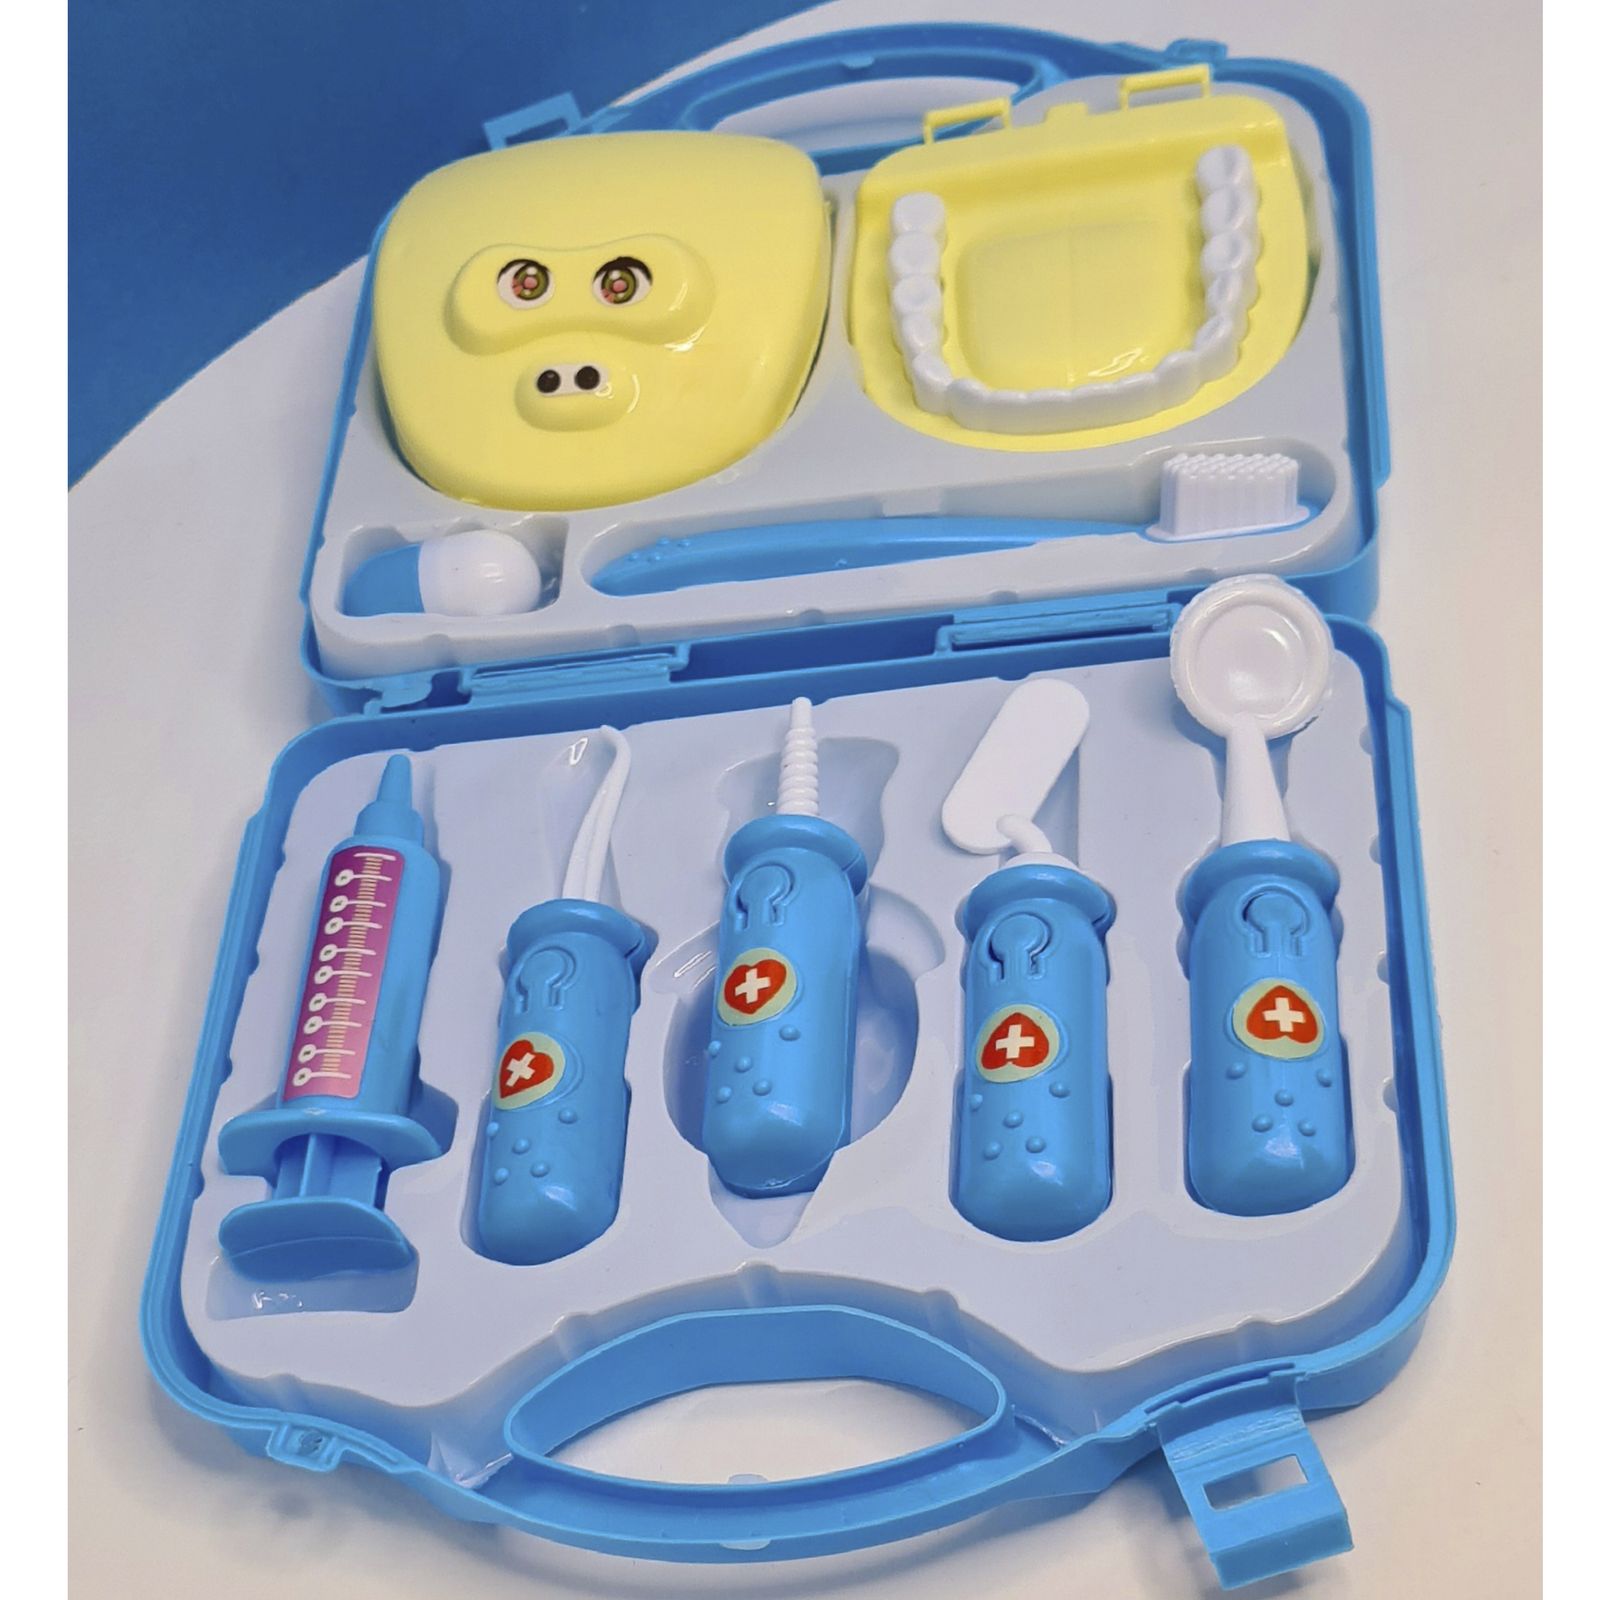 اسباب بازی مدل ست دندان پزشکی مجموعه 9 عددی -  - 4